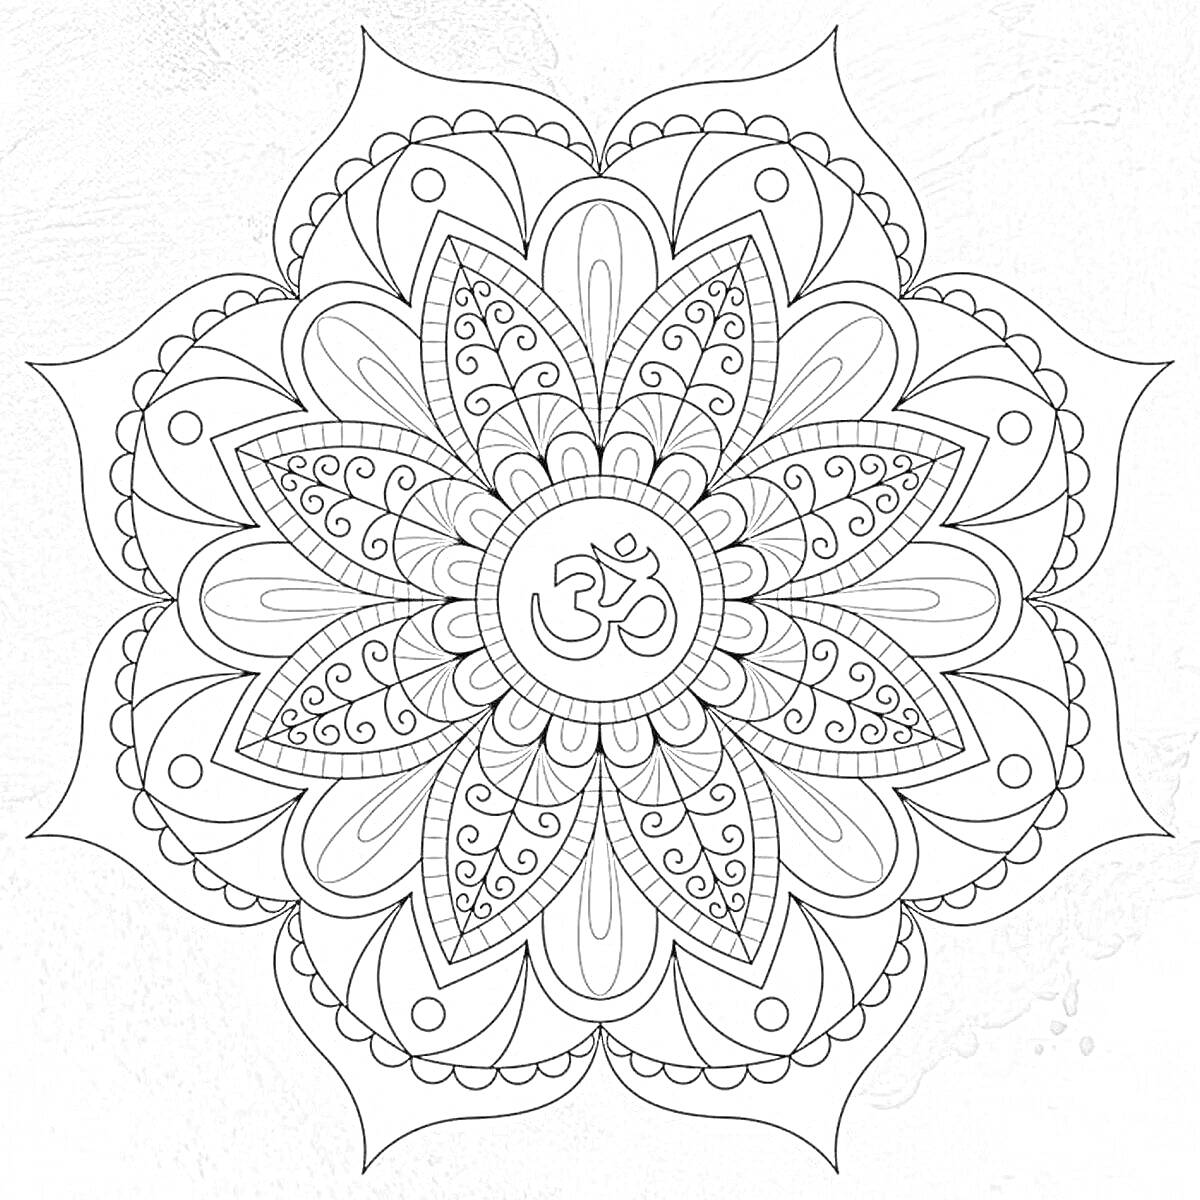 Раскраска Узор мандалы с символом Ом и листьями